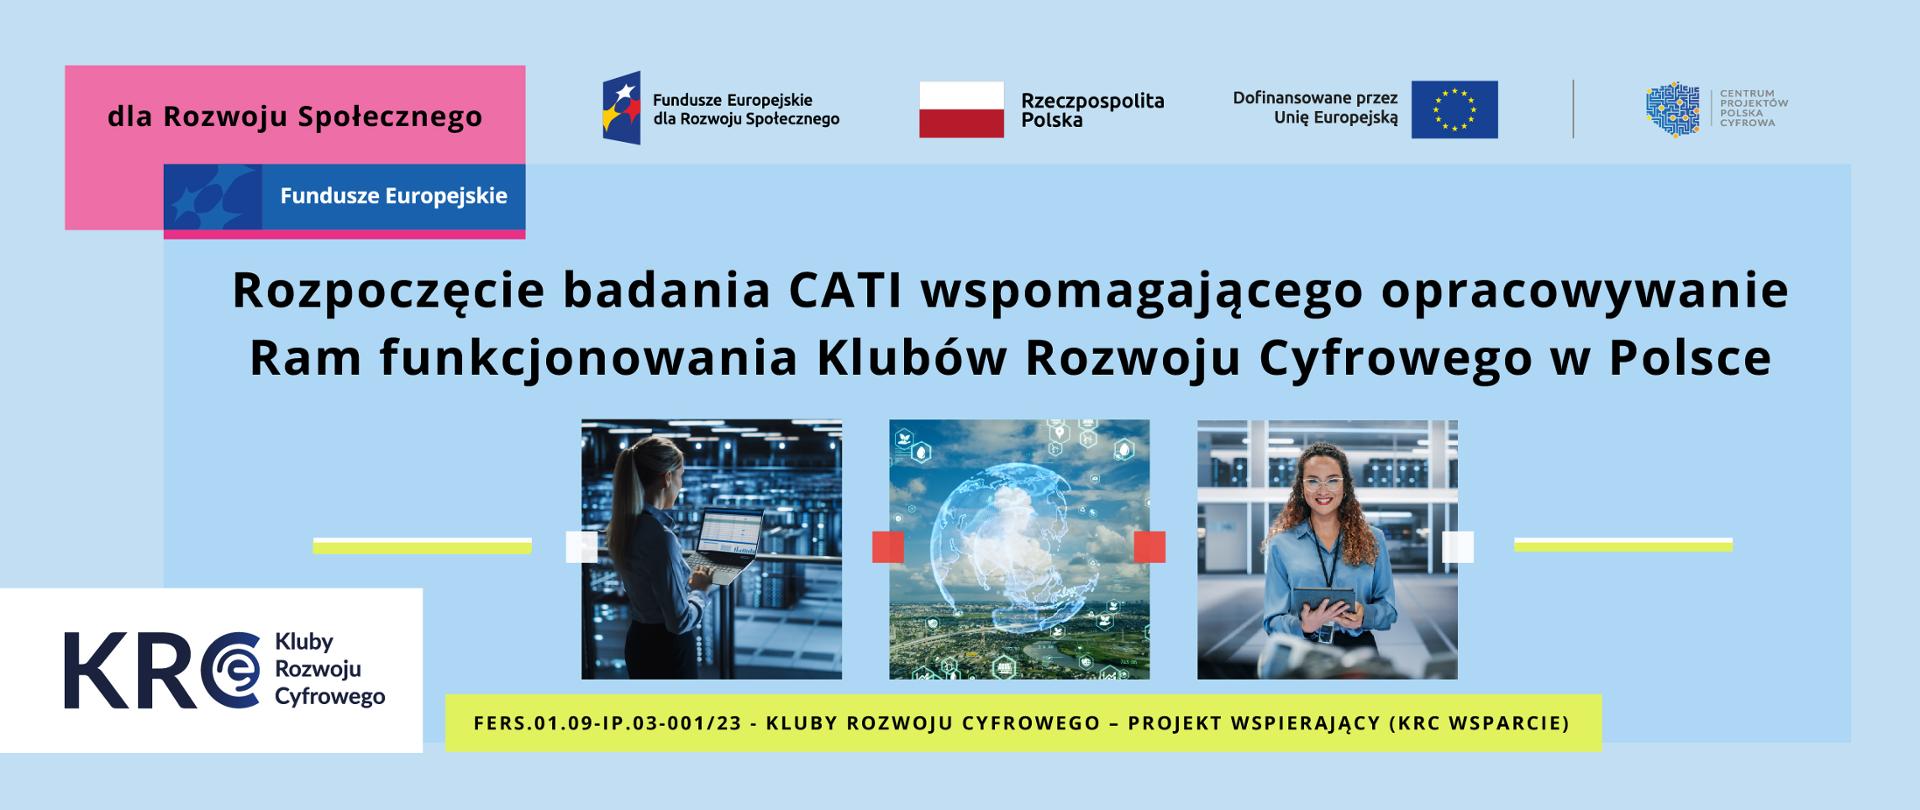 Rozpoczęcie badanie CATI wspomagającego opracowywanie Ram funkcjonowania KRC w Polsce